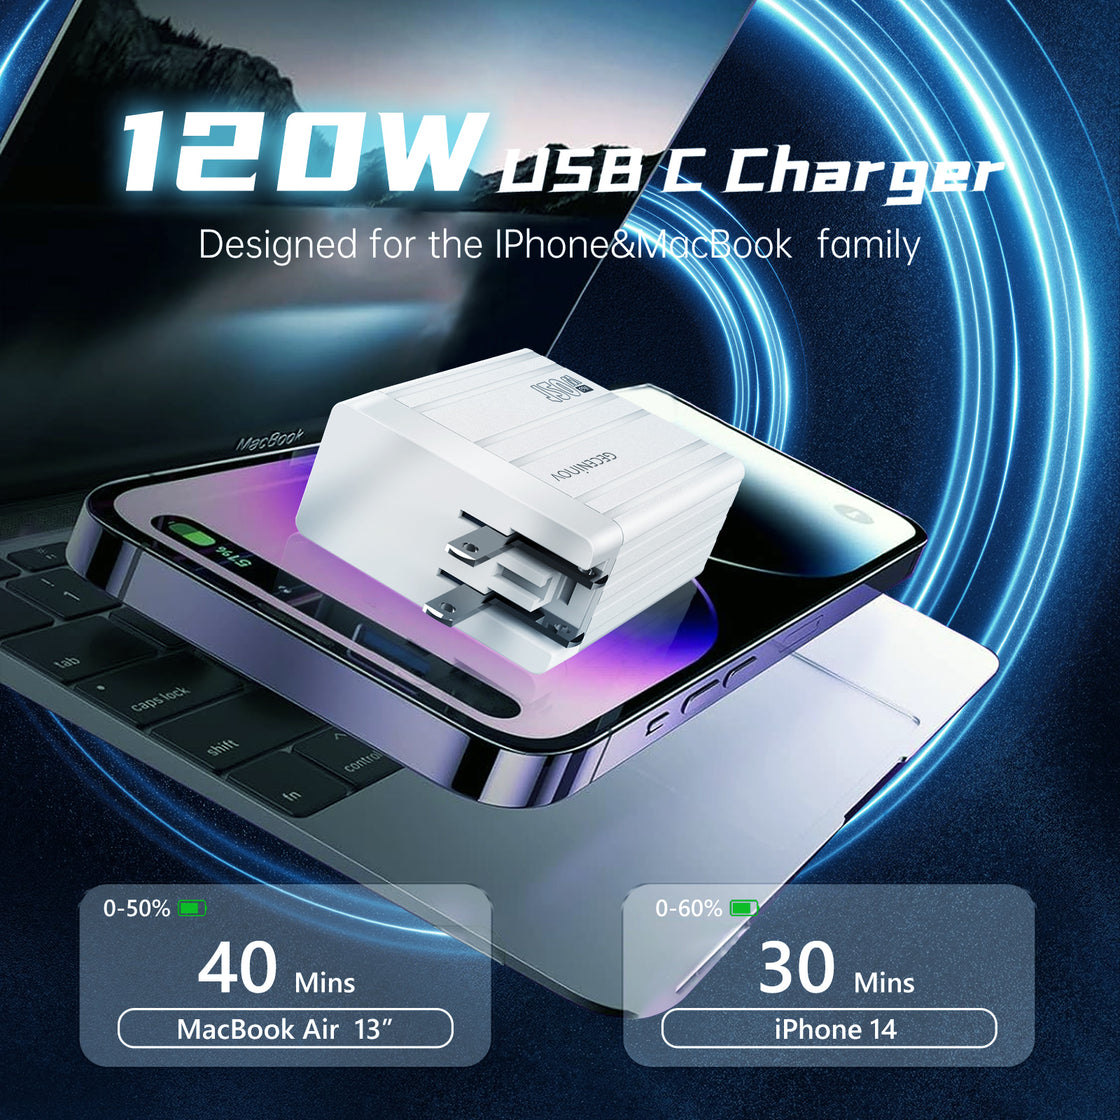 Geceninov 120W USB C  Fast Charging Block 2 Ports GaN Charger 2USB-C